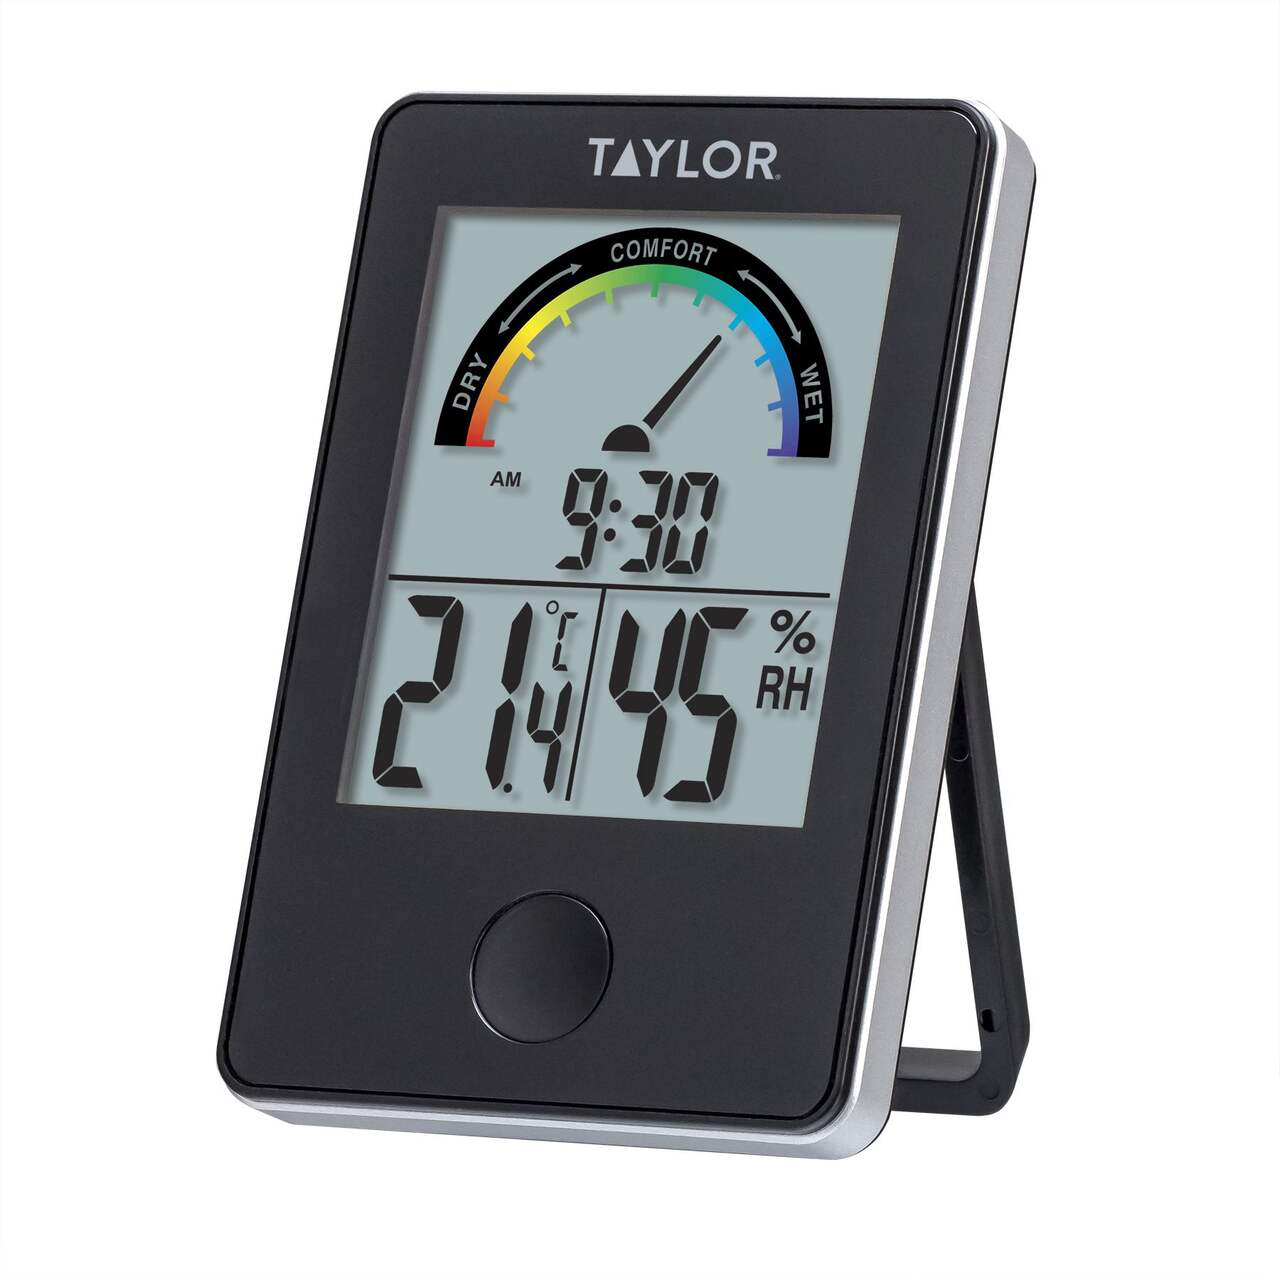 Station et thermomètre numérique de niveau de confort intérieur Taylor